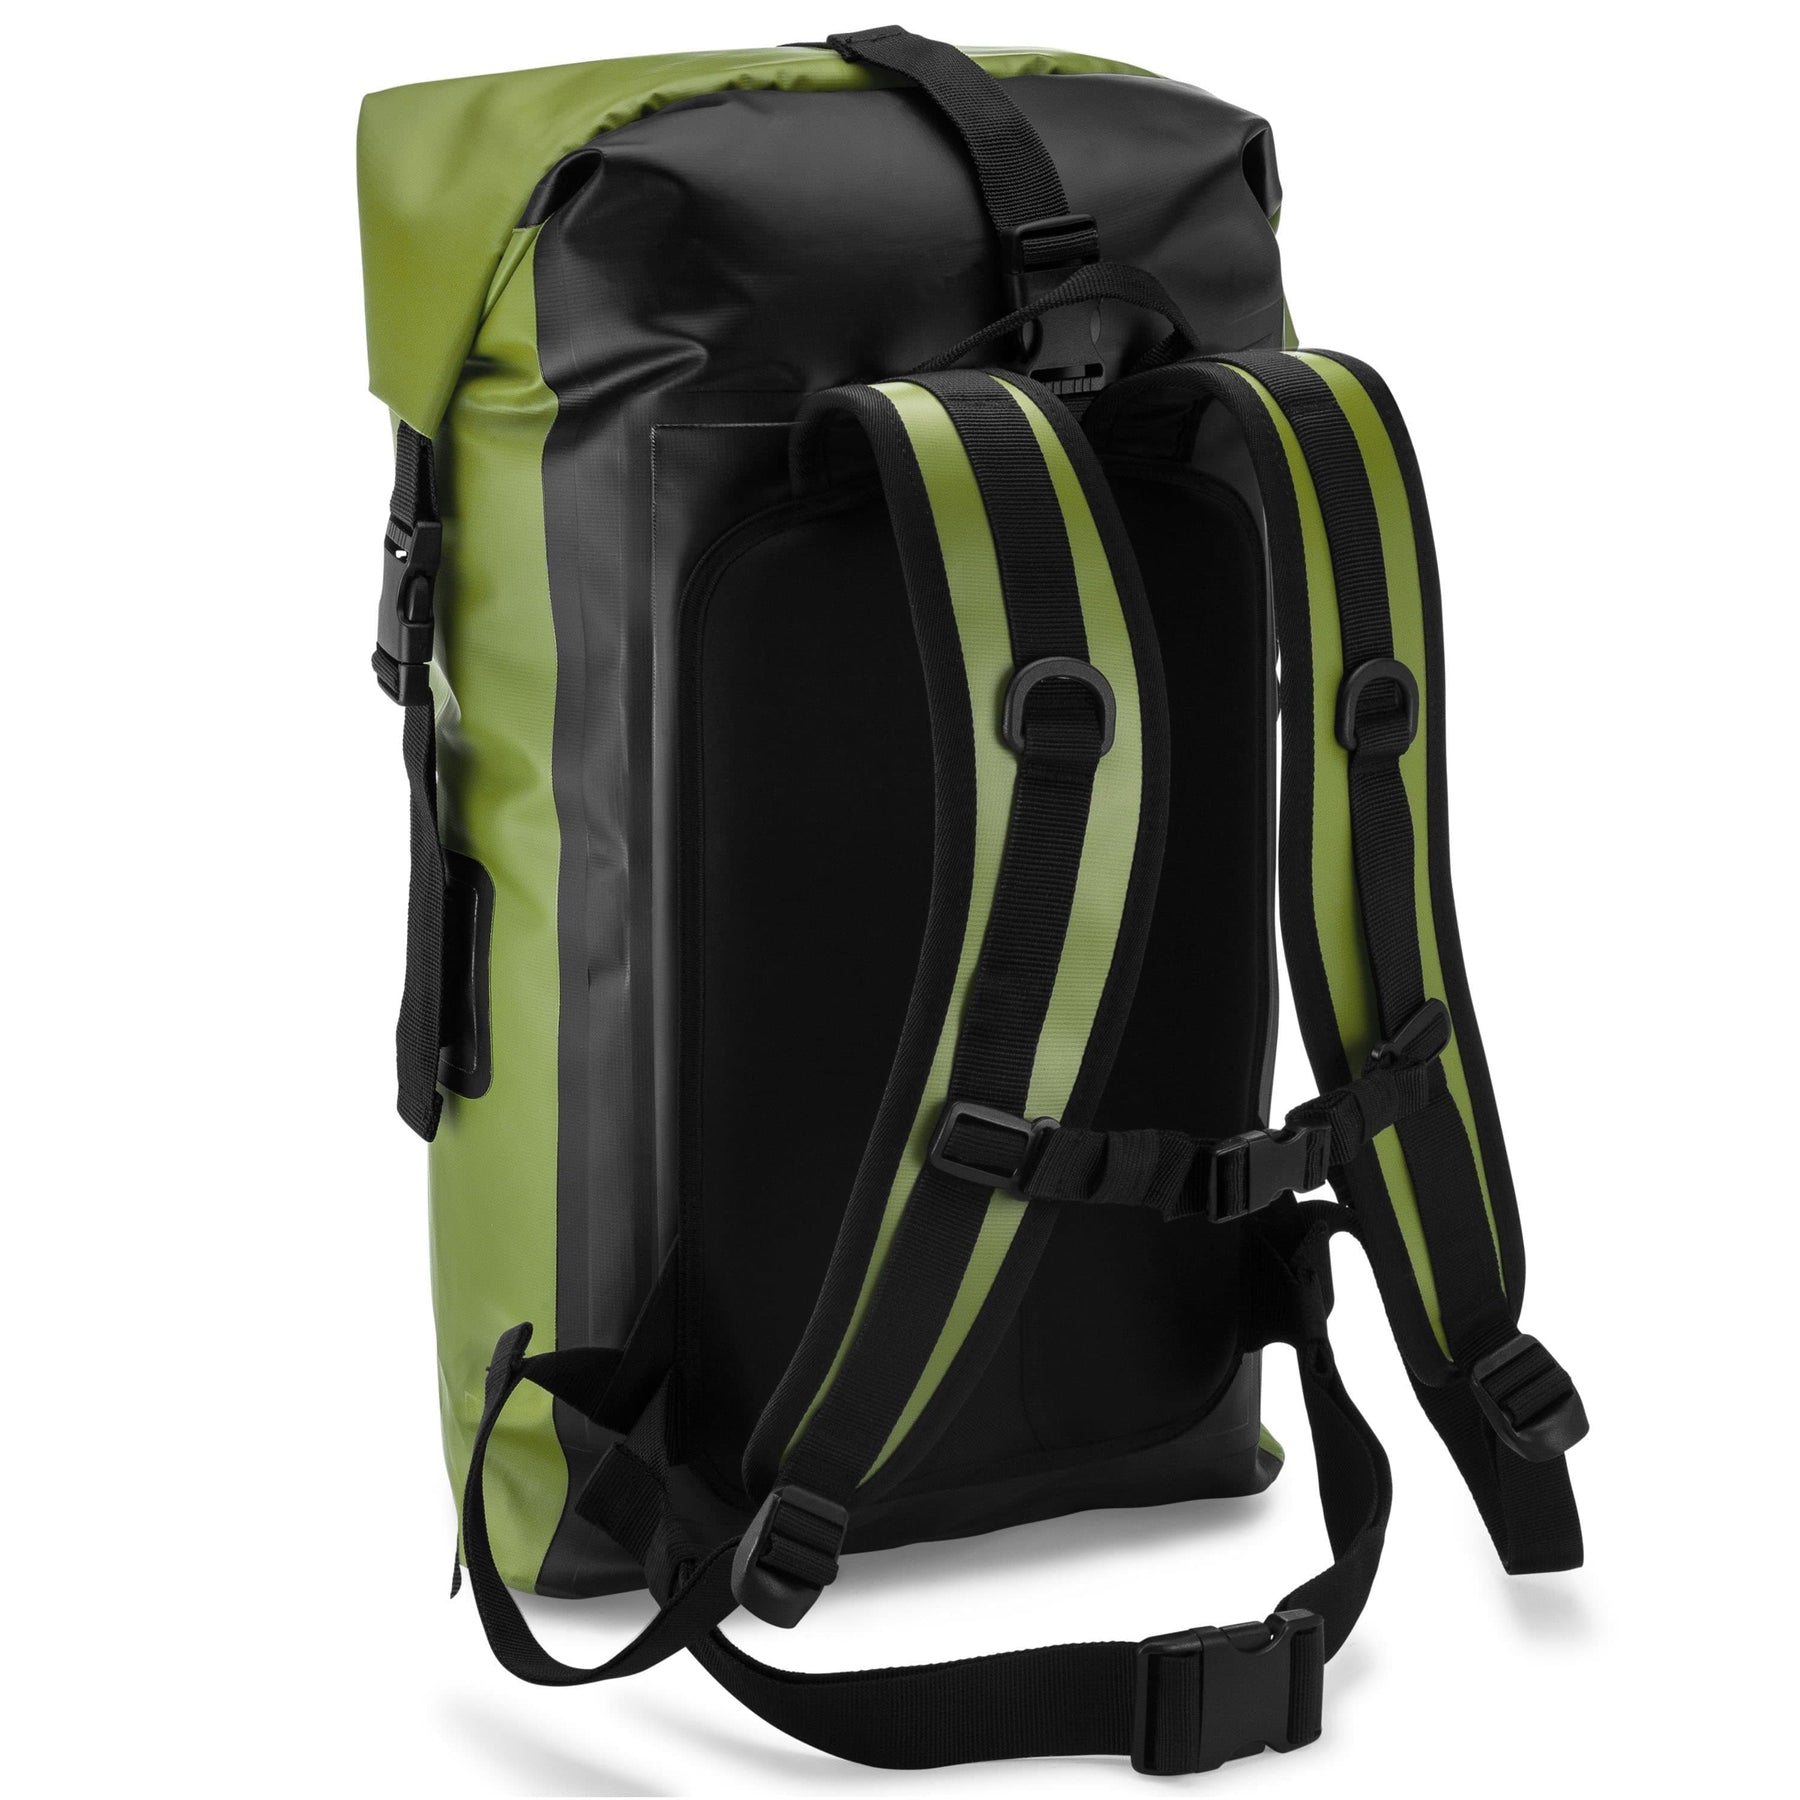 Laptop Bag Backpack